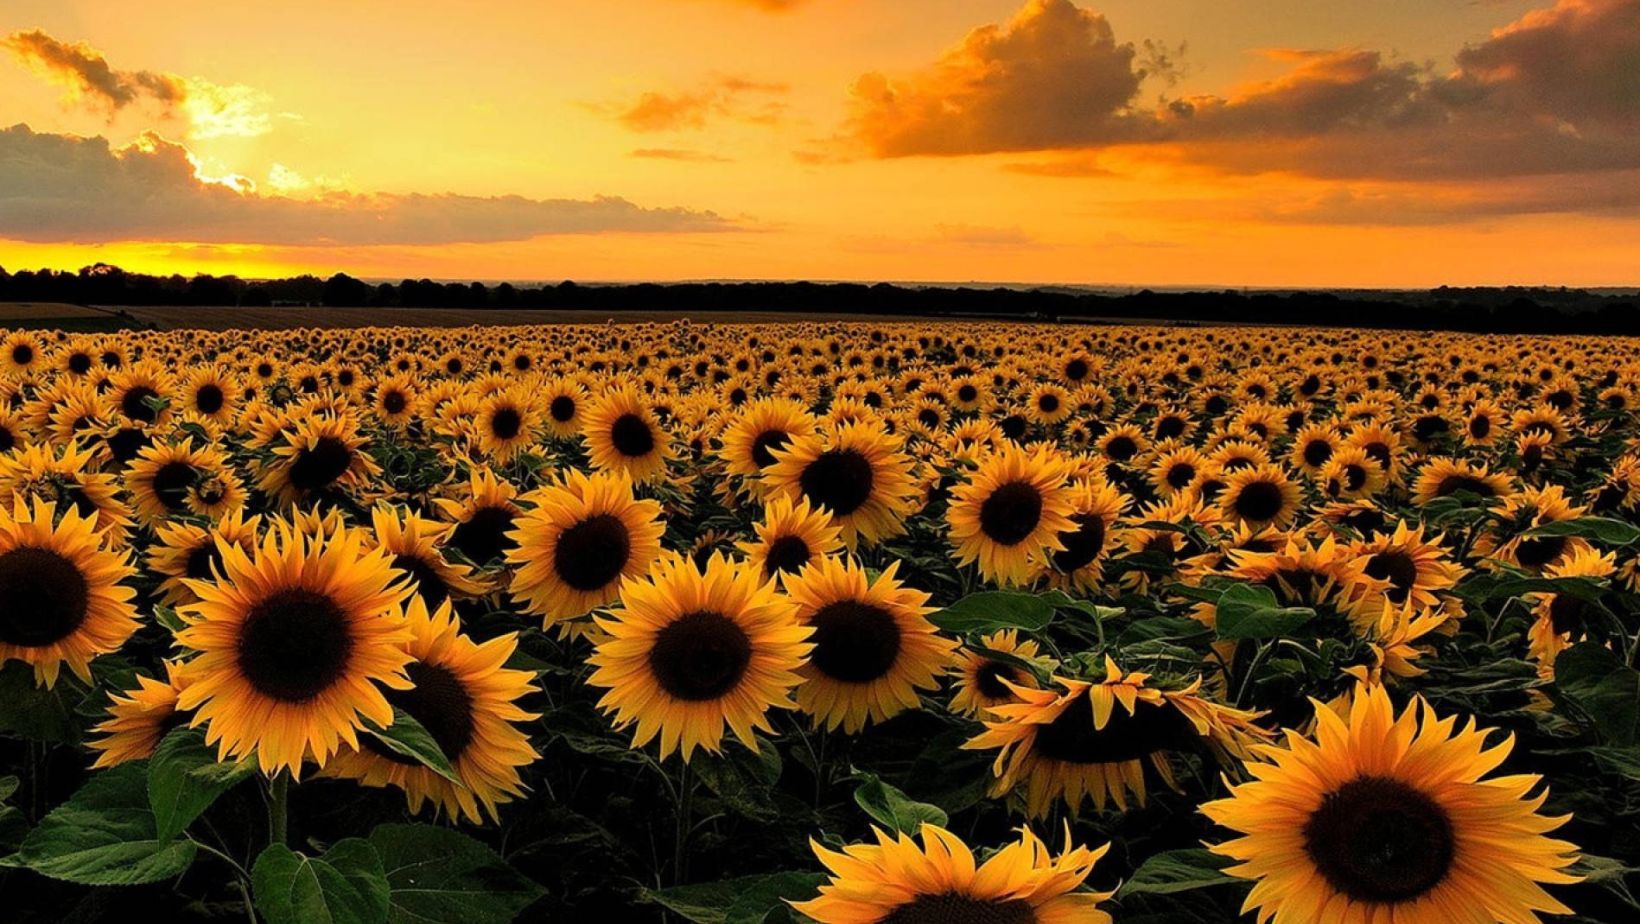 sunflower iphone wallpaper